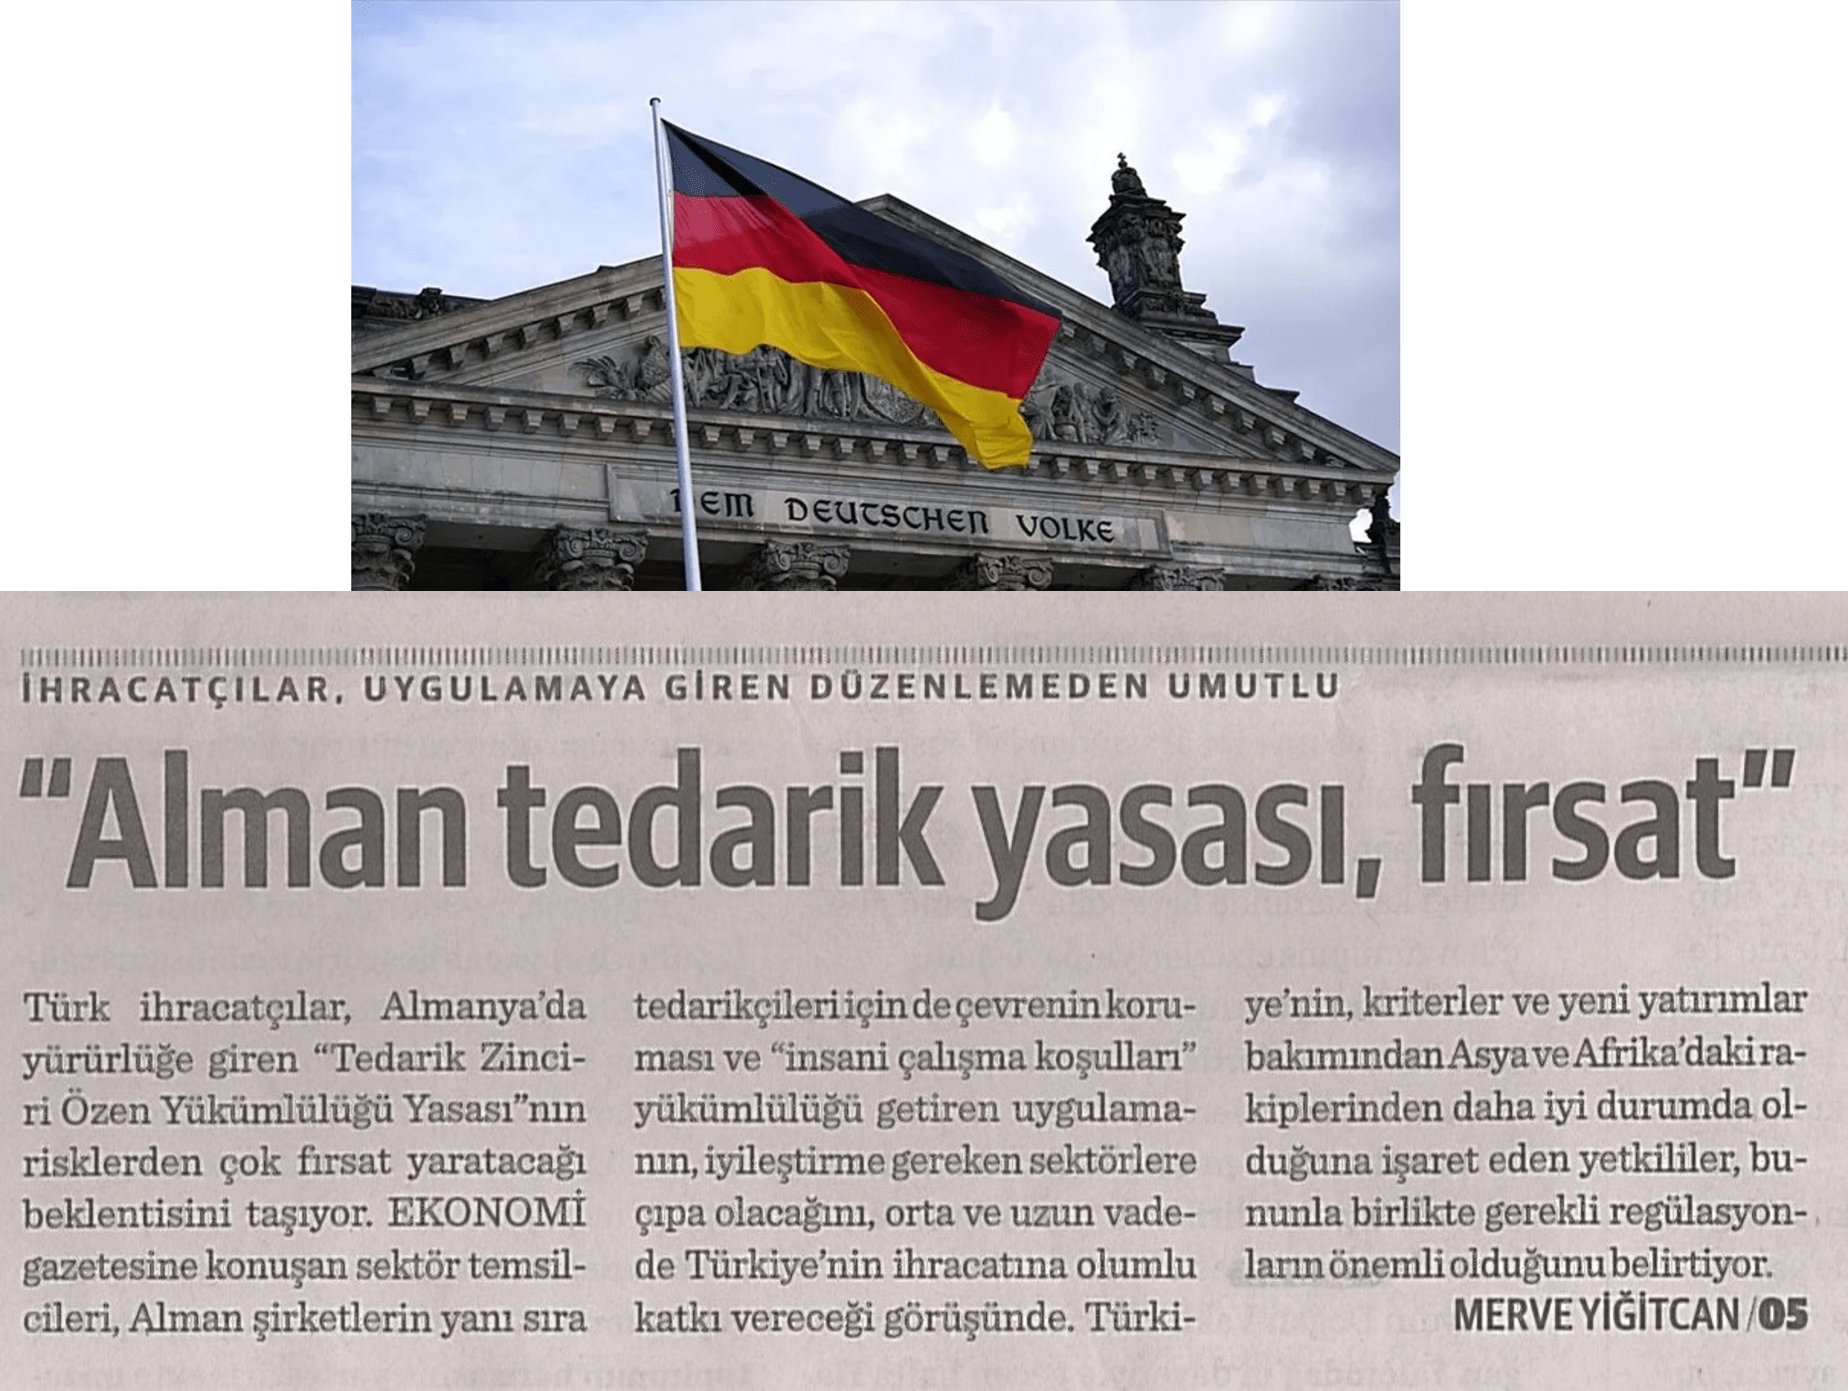 Almanya'nın Tedarikçi Yasası Türkiye'ye Fırsat Kapısı Açacak 